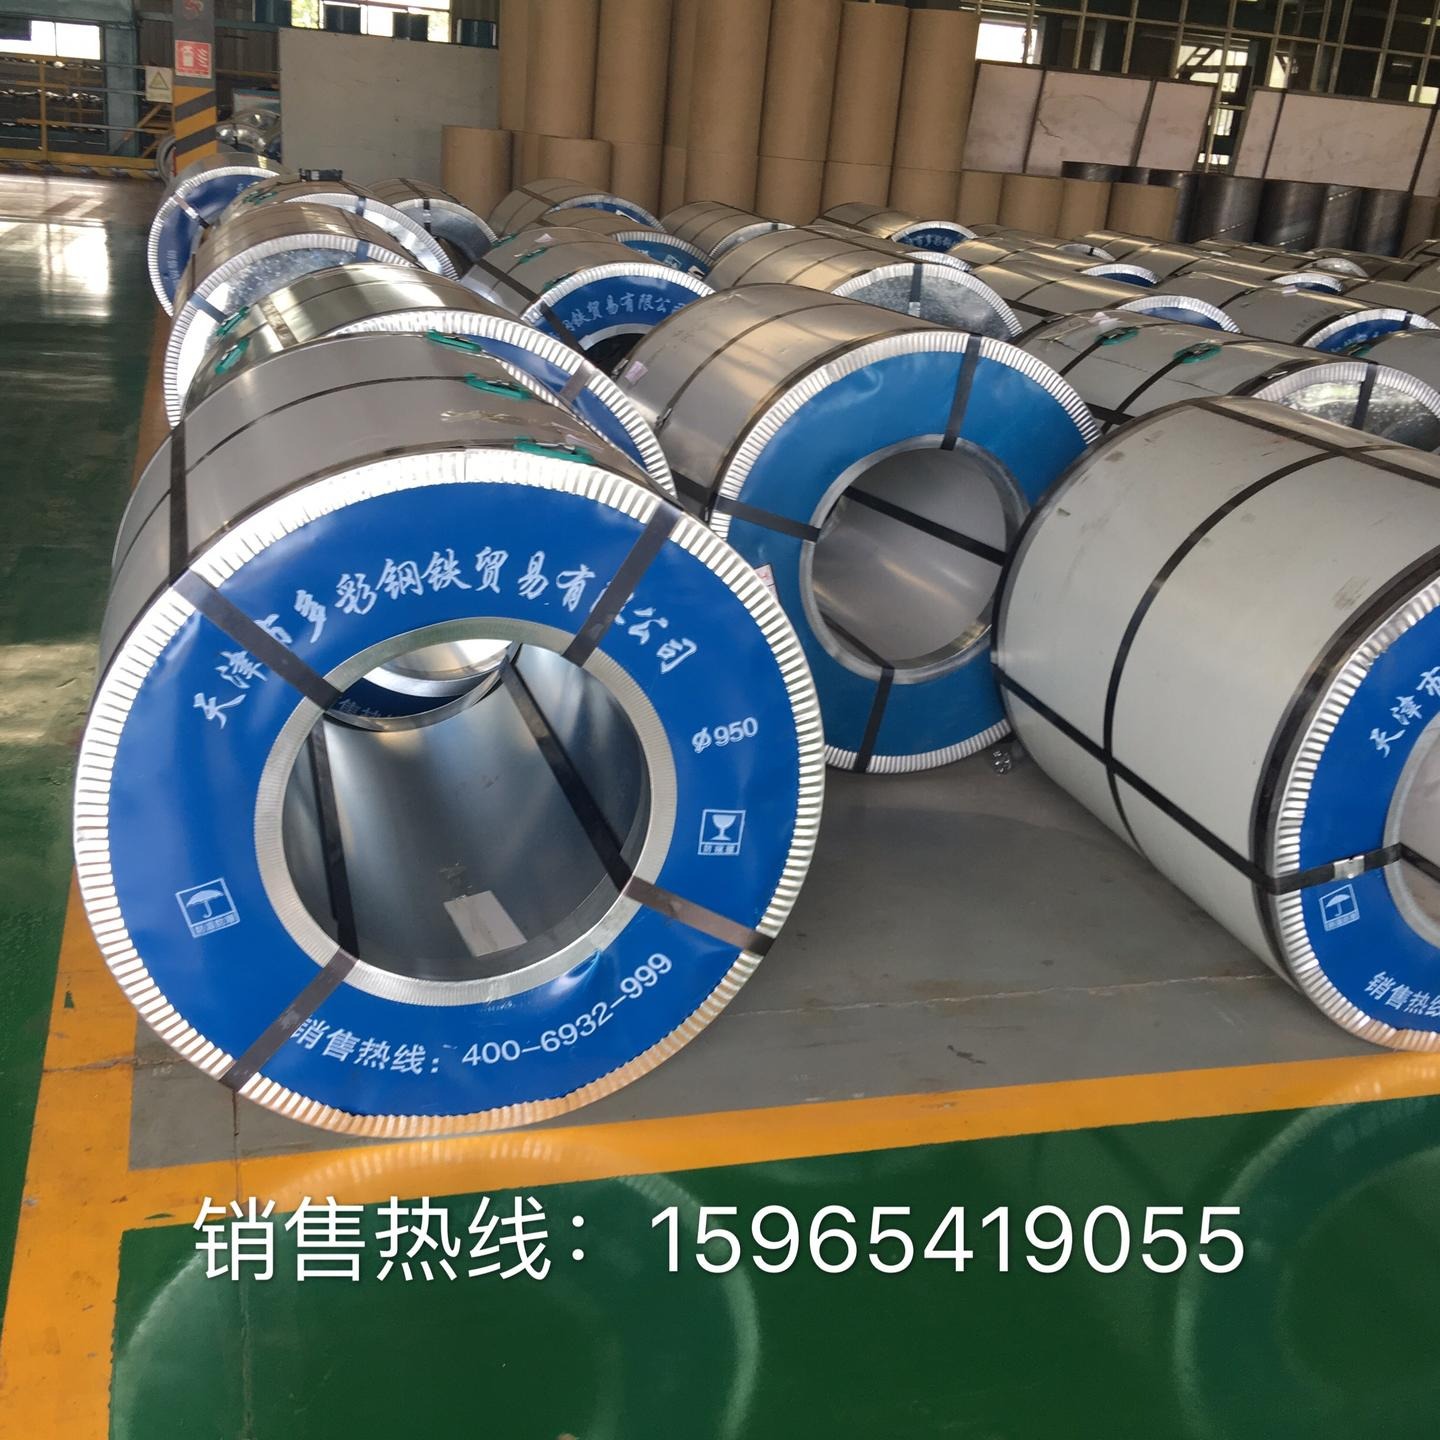 天津多彩钢铁贸易有限公司主要生产镀锌板 彩涂板3